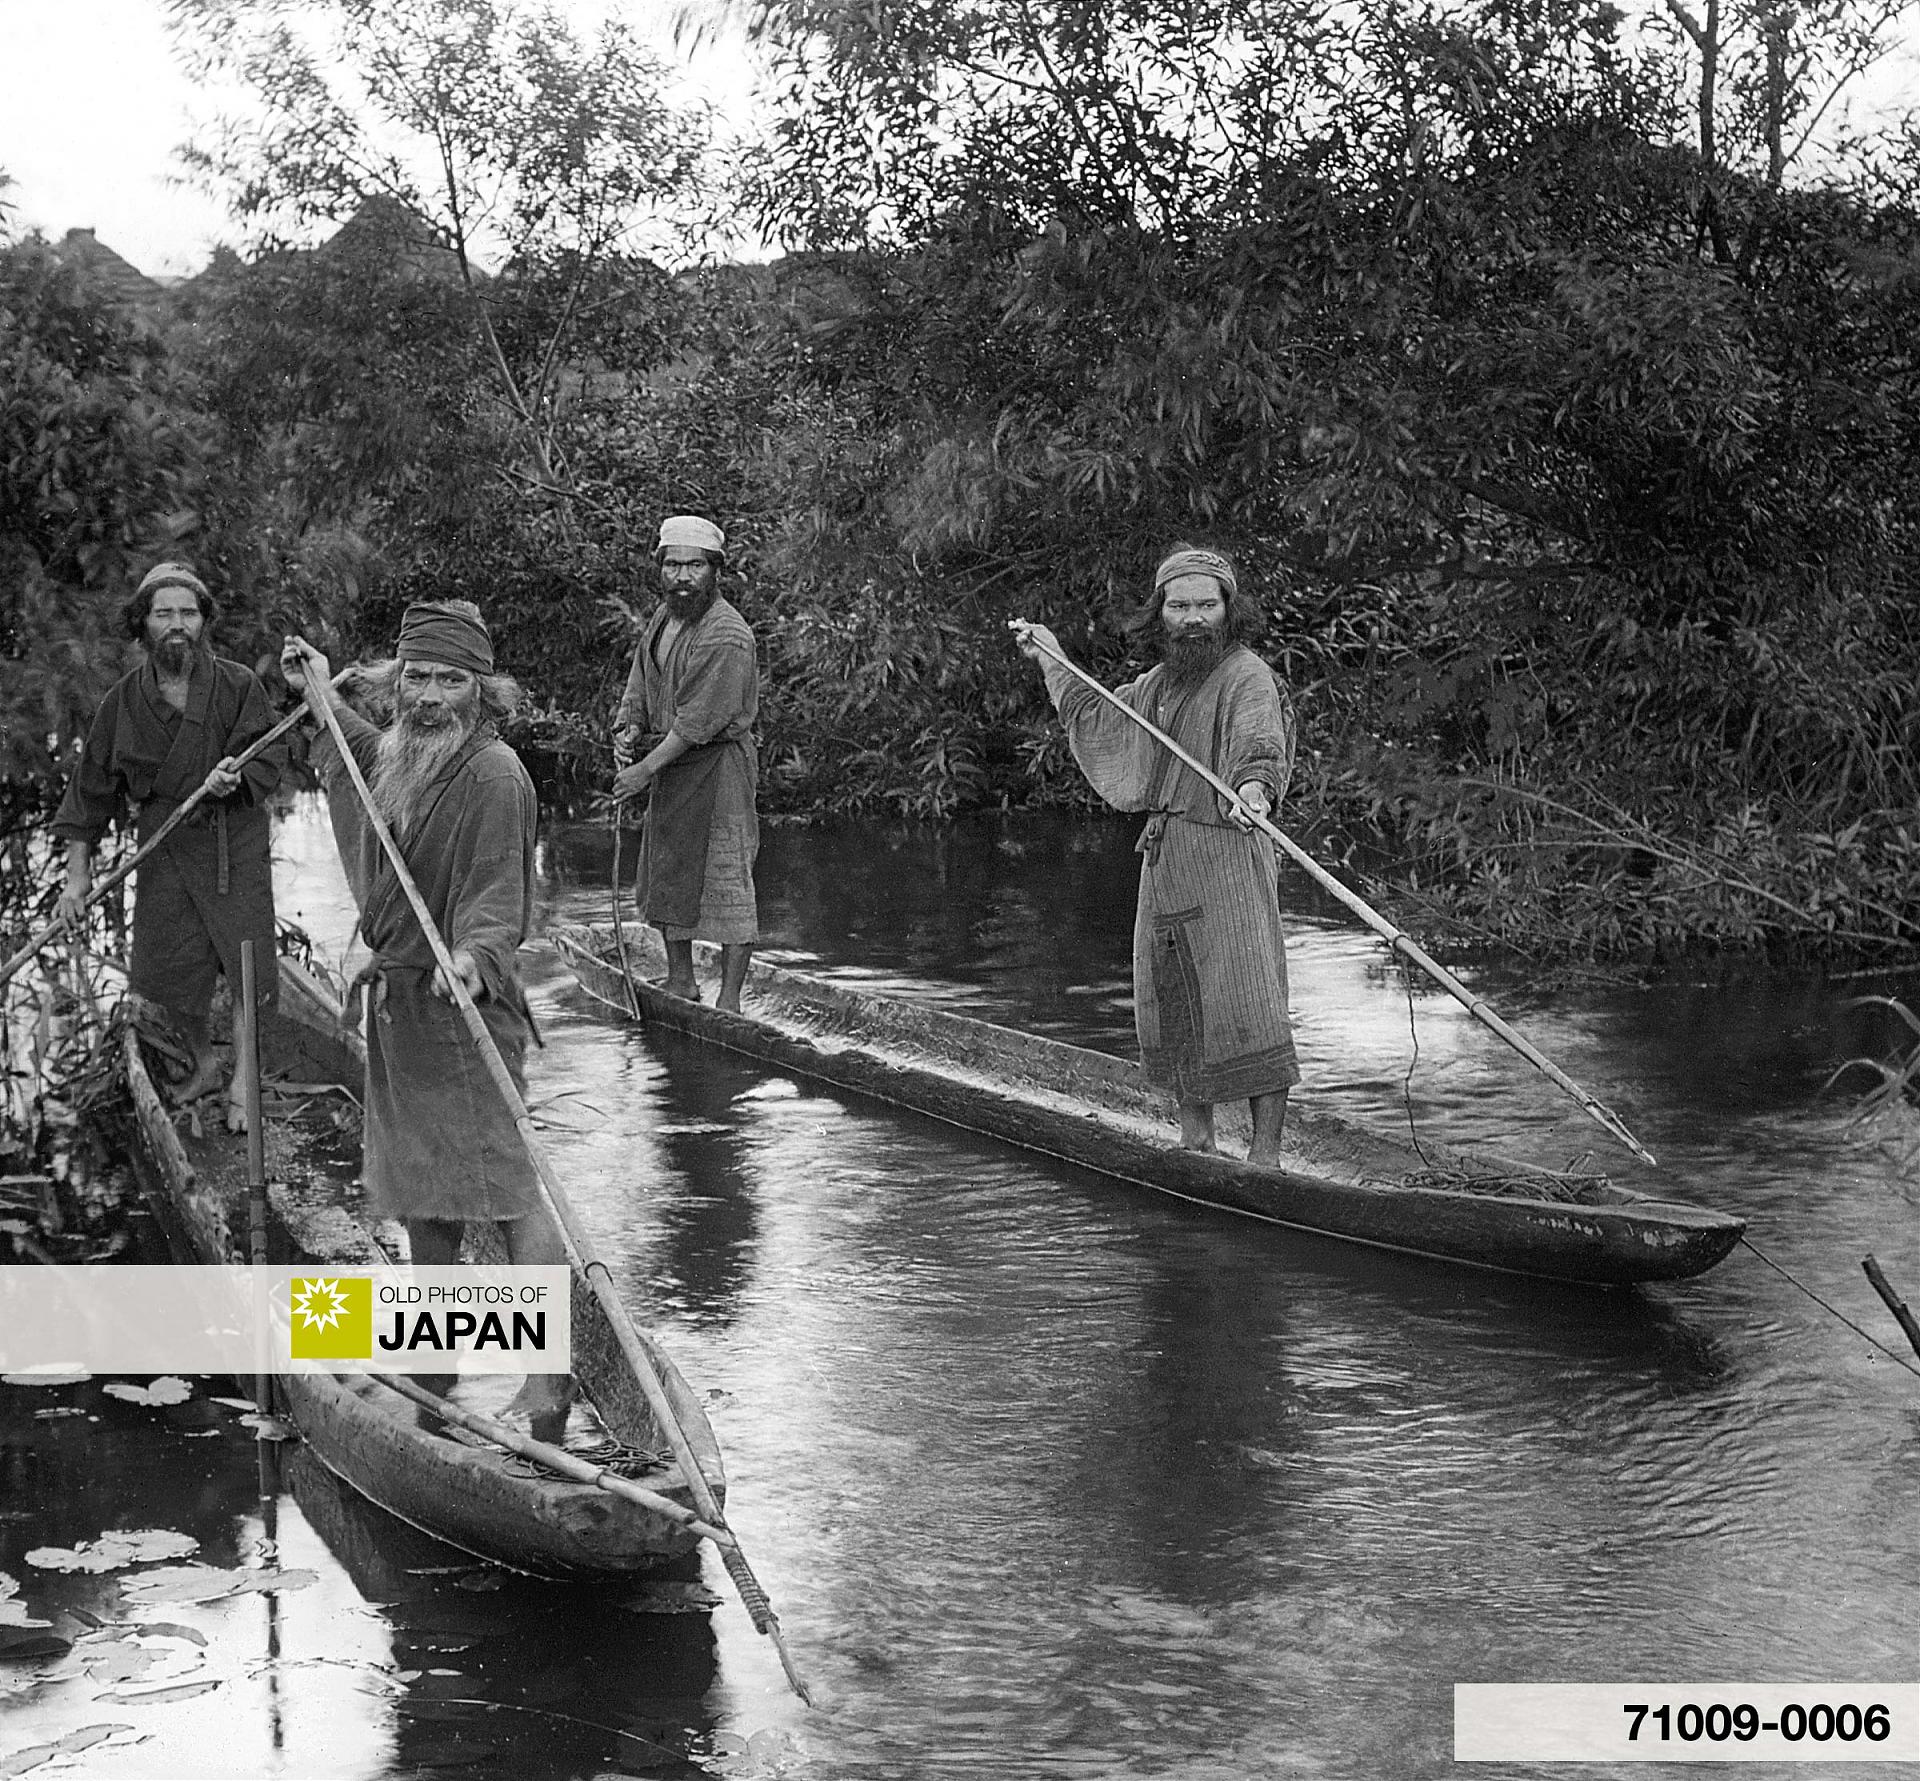 71009-0006 - Ainu Fishermen in Log Boats